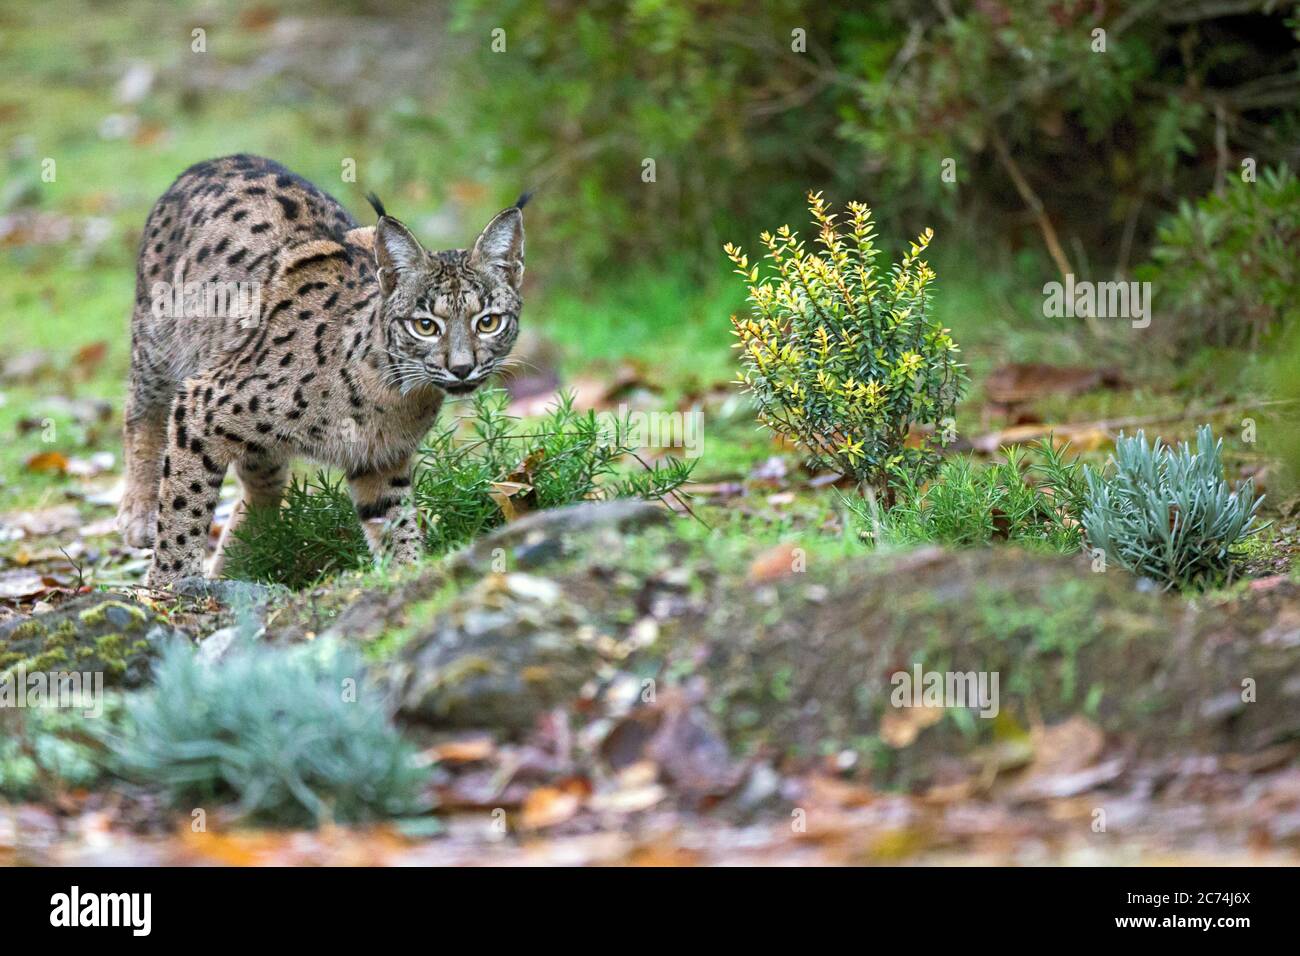 Lynx ibérique (Lynx pardinus), regarde dans la caméra, Espagne Banque D'Images